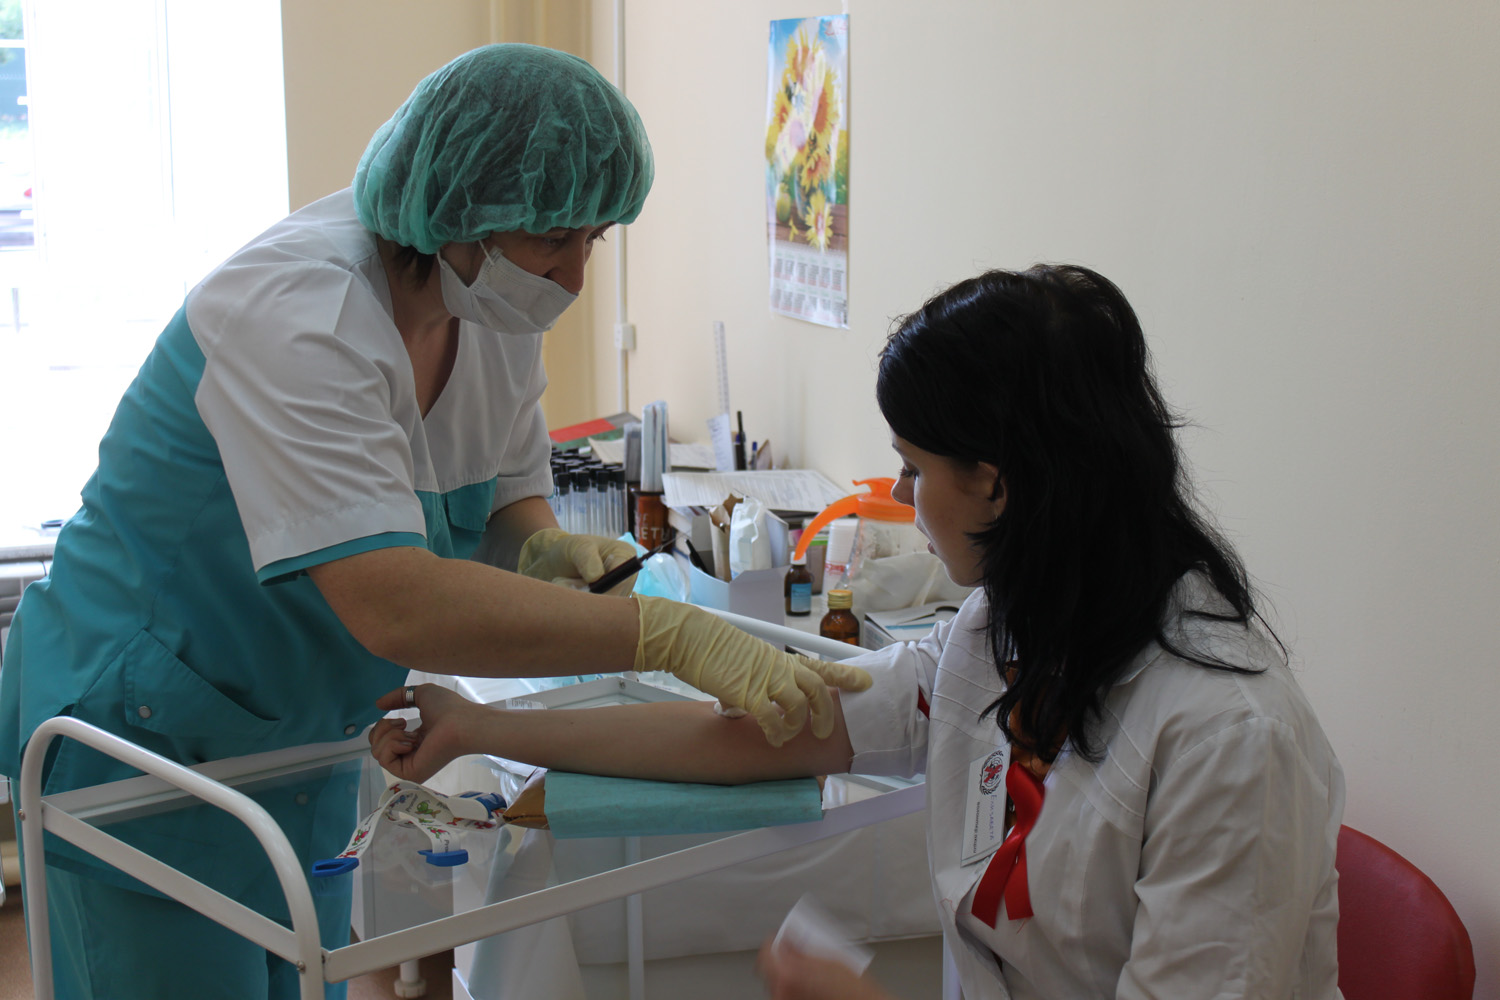 медсестра берет кровь из вены у пациентки в медицинском кабинете